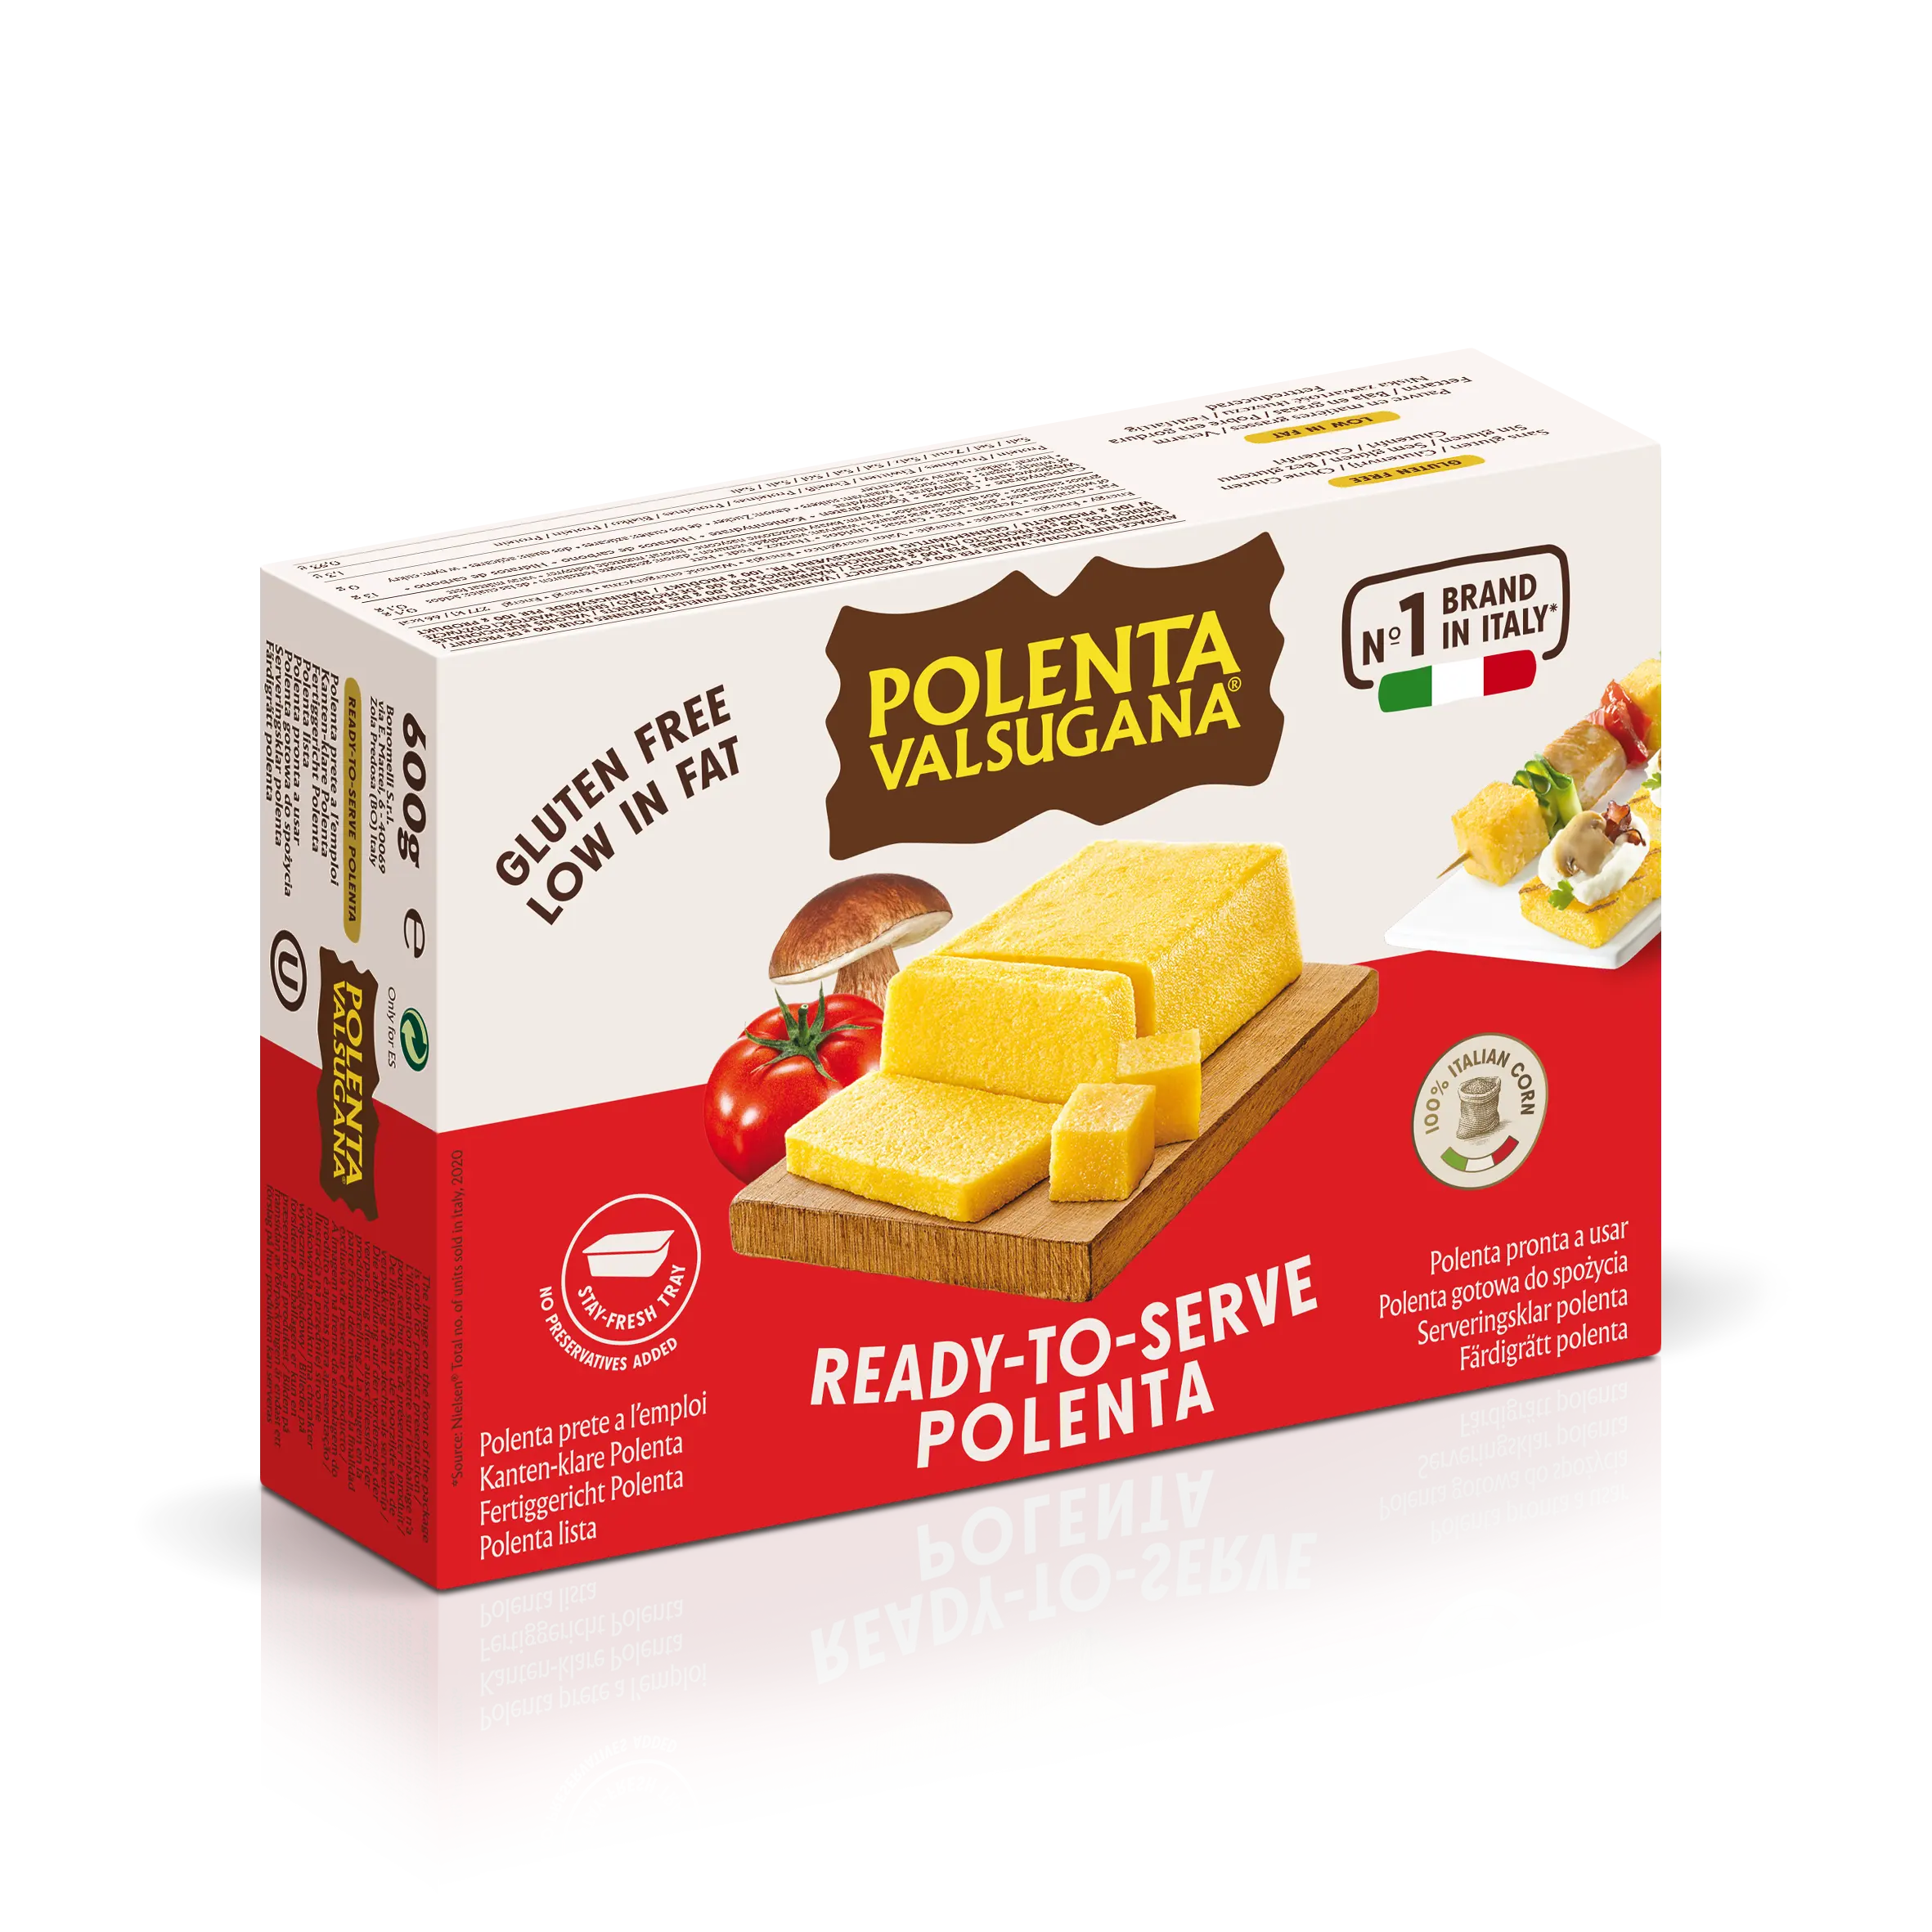 عالية الجودة الايطالية عصيدة Valsugana جاهزة لخدمة شحن الذرة الصفراء الغلوتين الدقيق 1 مربع 600 g ل سريعة الطبخ